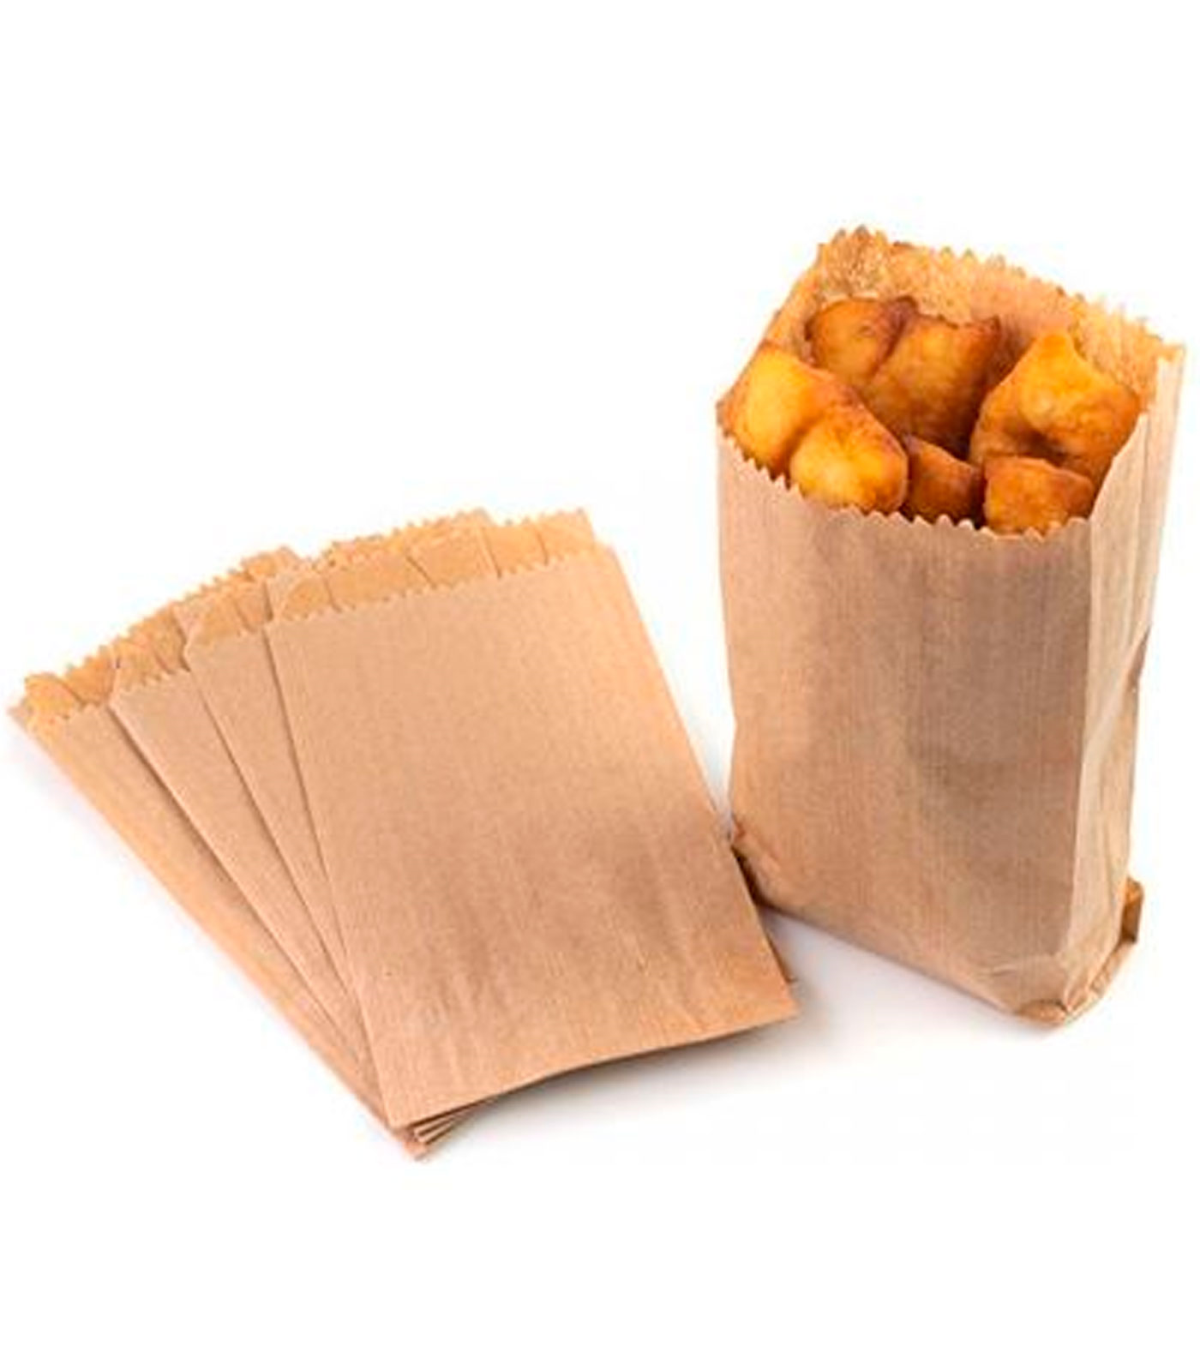 Tradineur - Pack de 25 bolsas de papel kraft para alimentos,  biodegradables, compostables, reutilizables, aptas para uso aliment